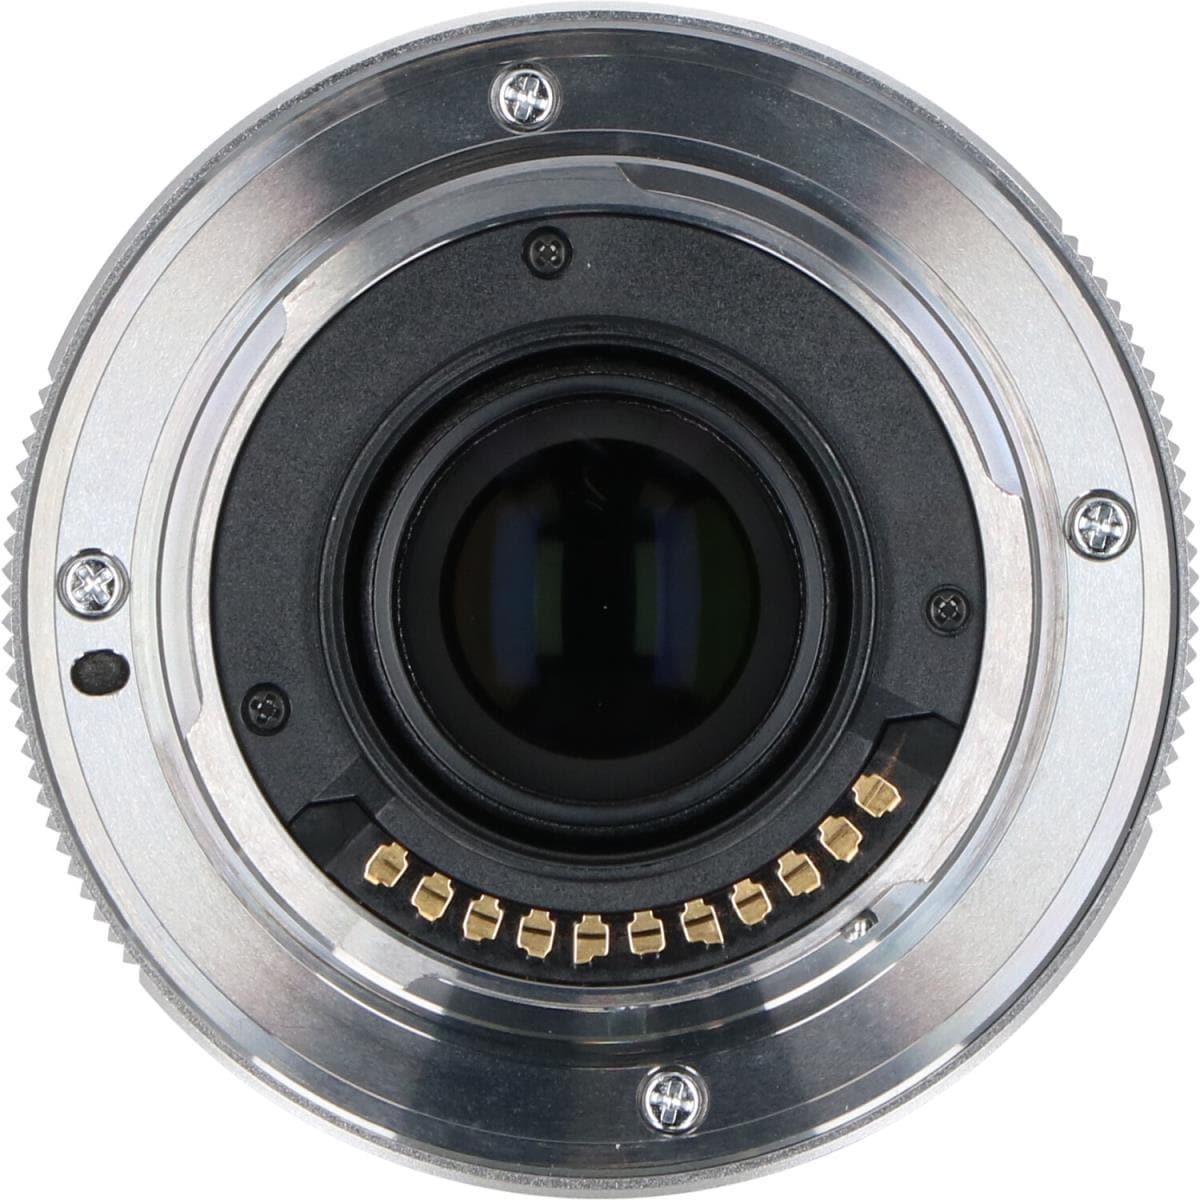 KOMEHYO |奥林巴斯MZD12mm F2SILVER|奥林巴斯|相机|可更换镜头|自动